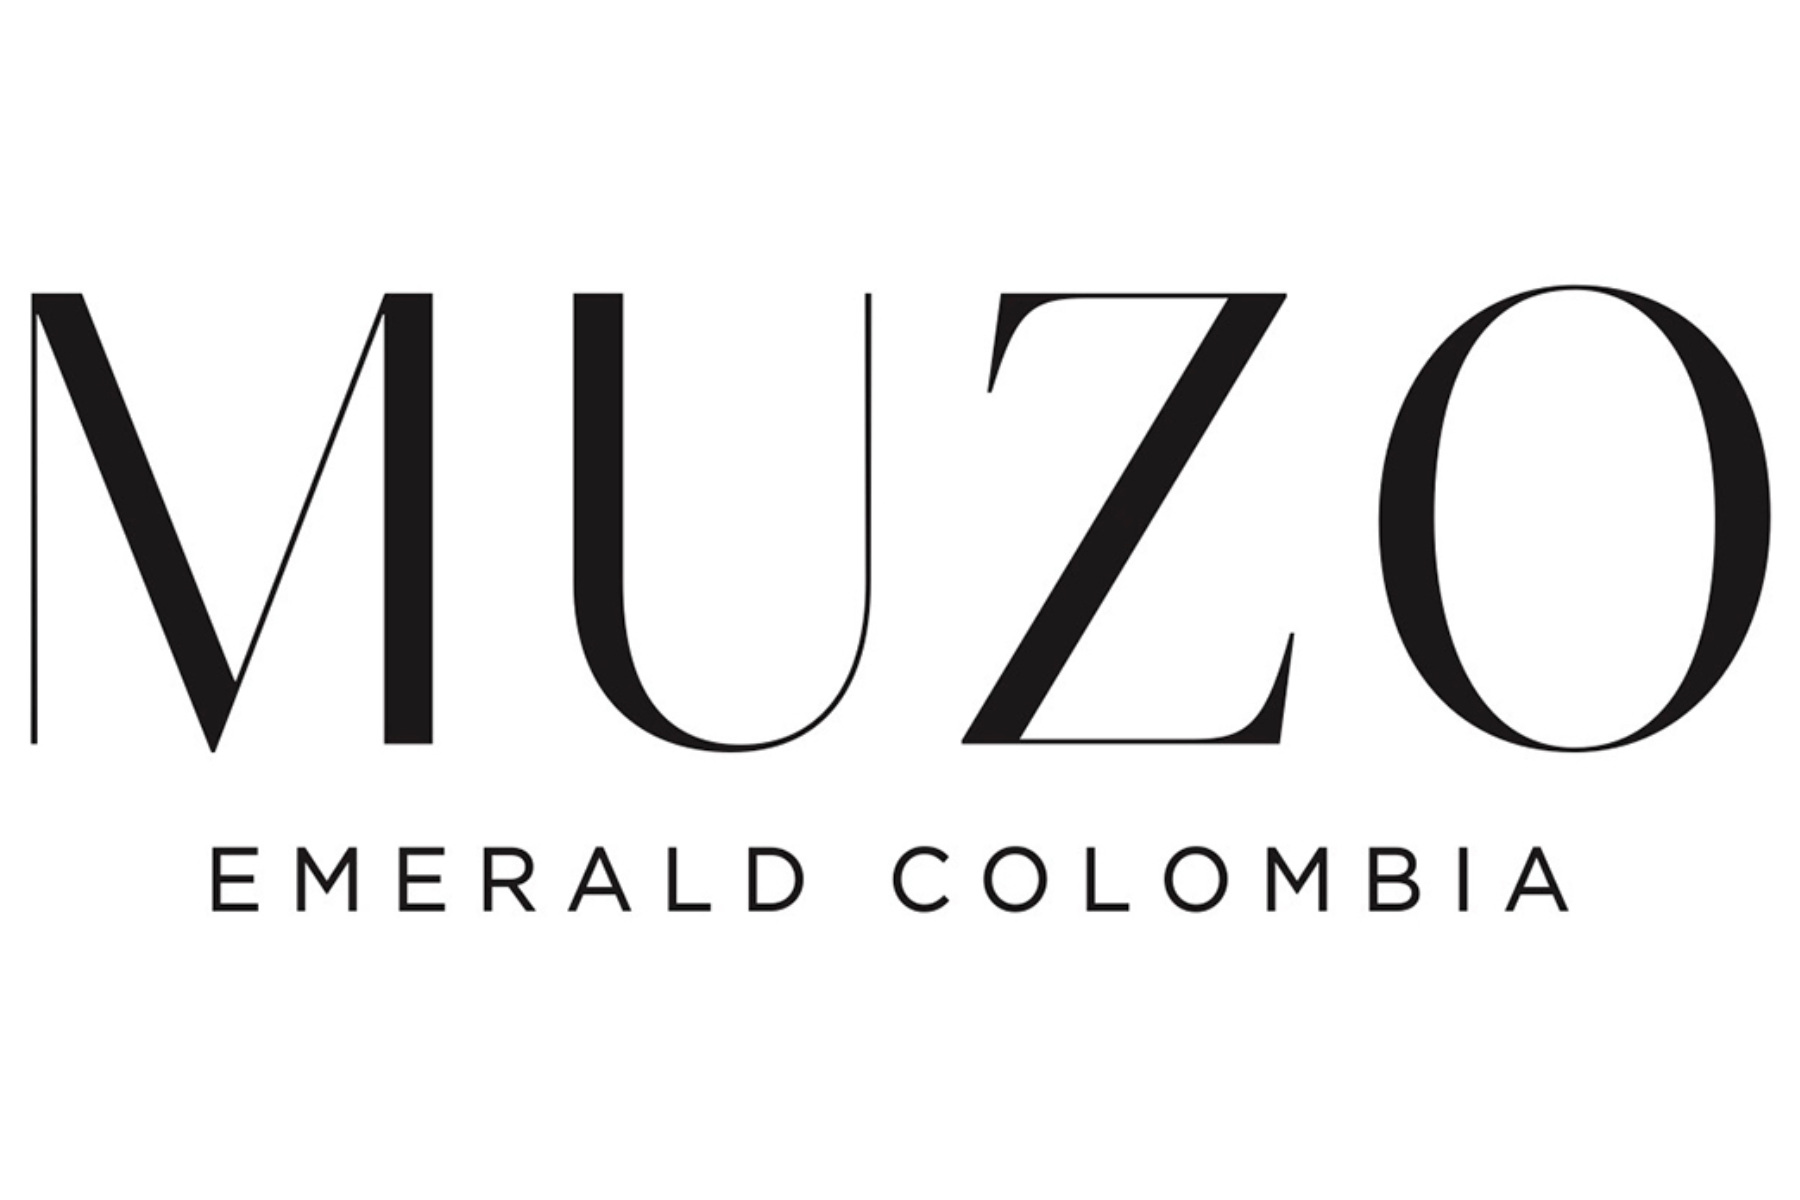 The logo of Muzo